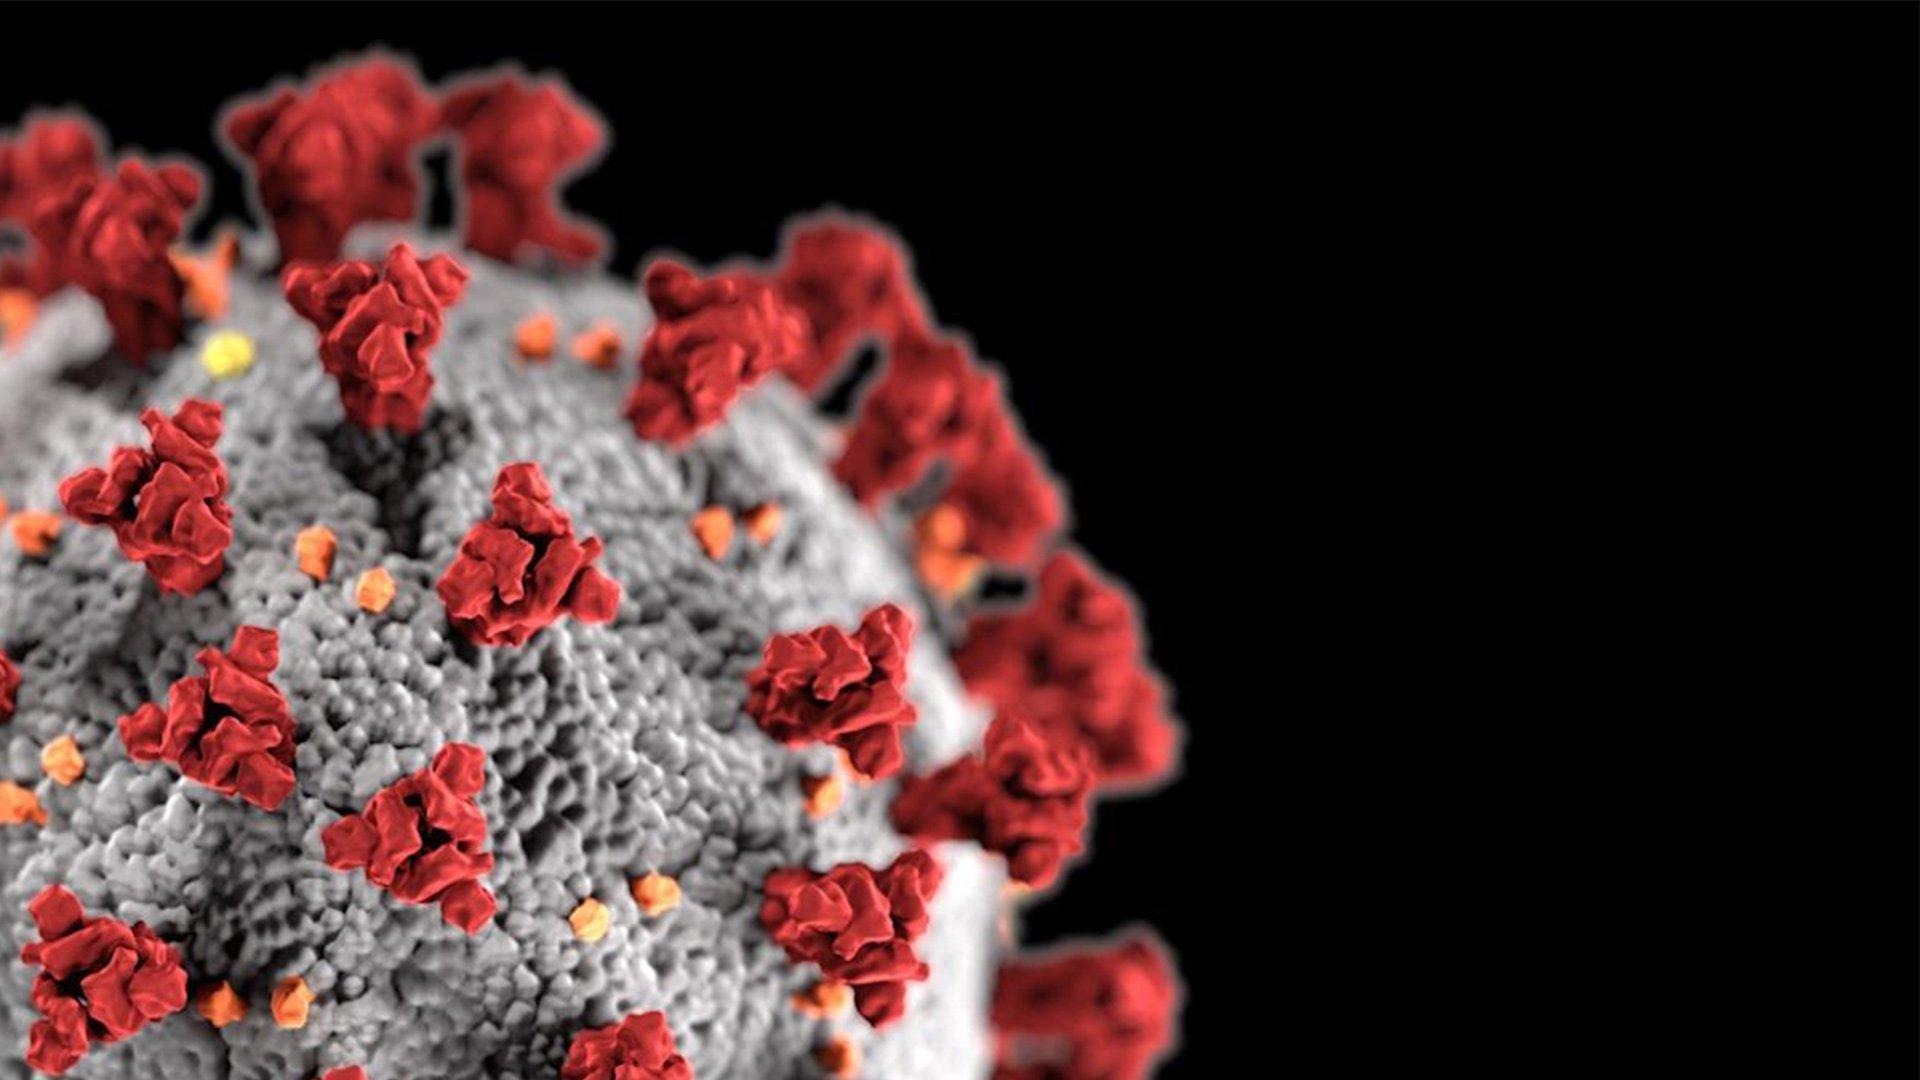 كيف تمكن العلم من تصنيع لقاحات فيروس كورونا بسرعة وفعالية هكذا؟